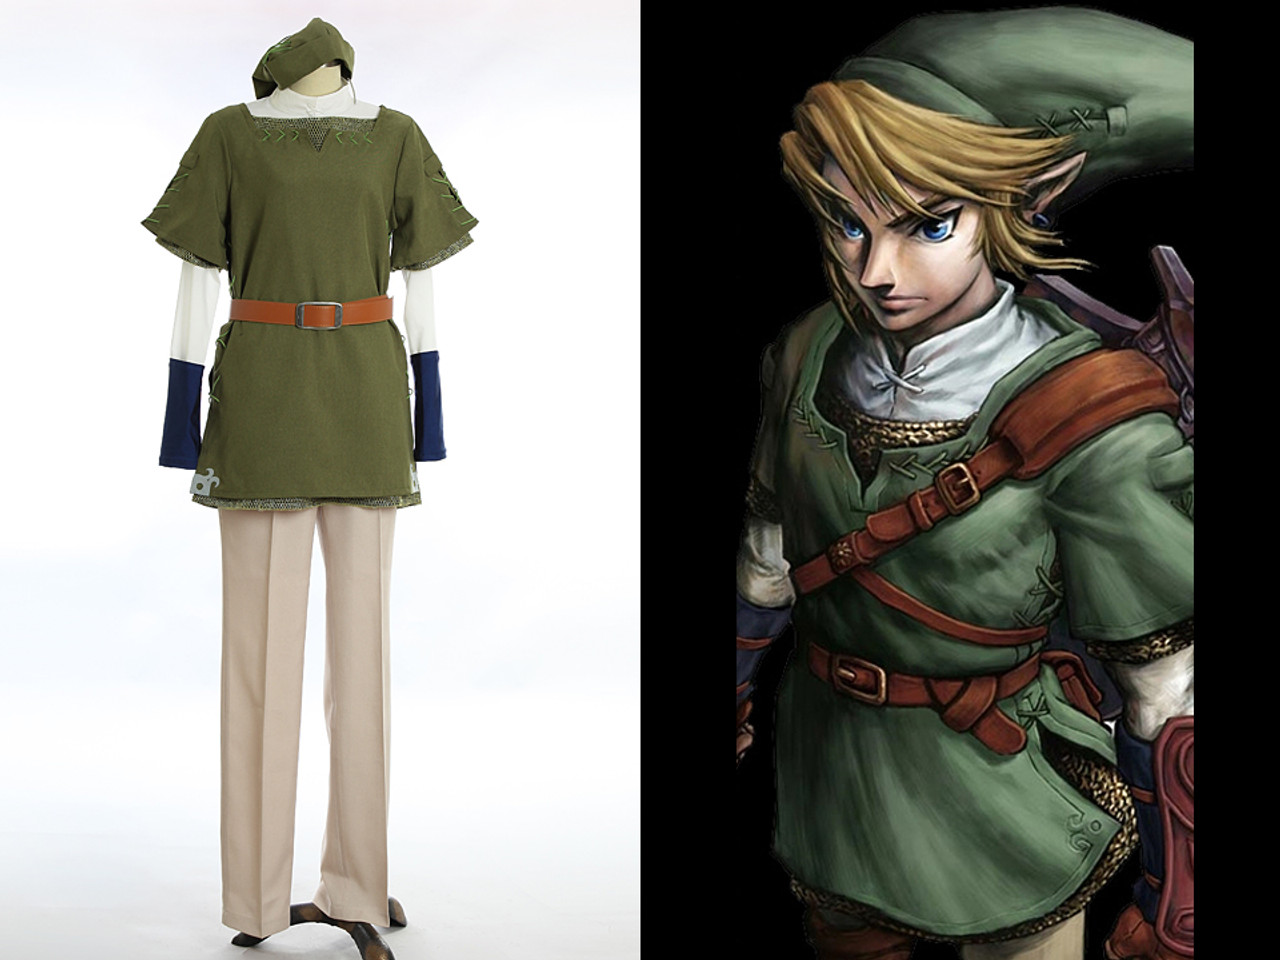 Link from The Legend of Zelda Cosplay